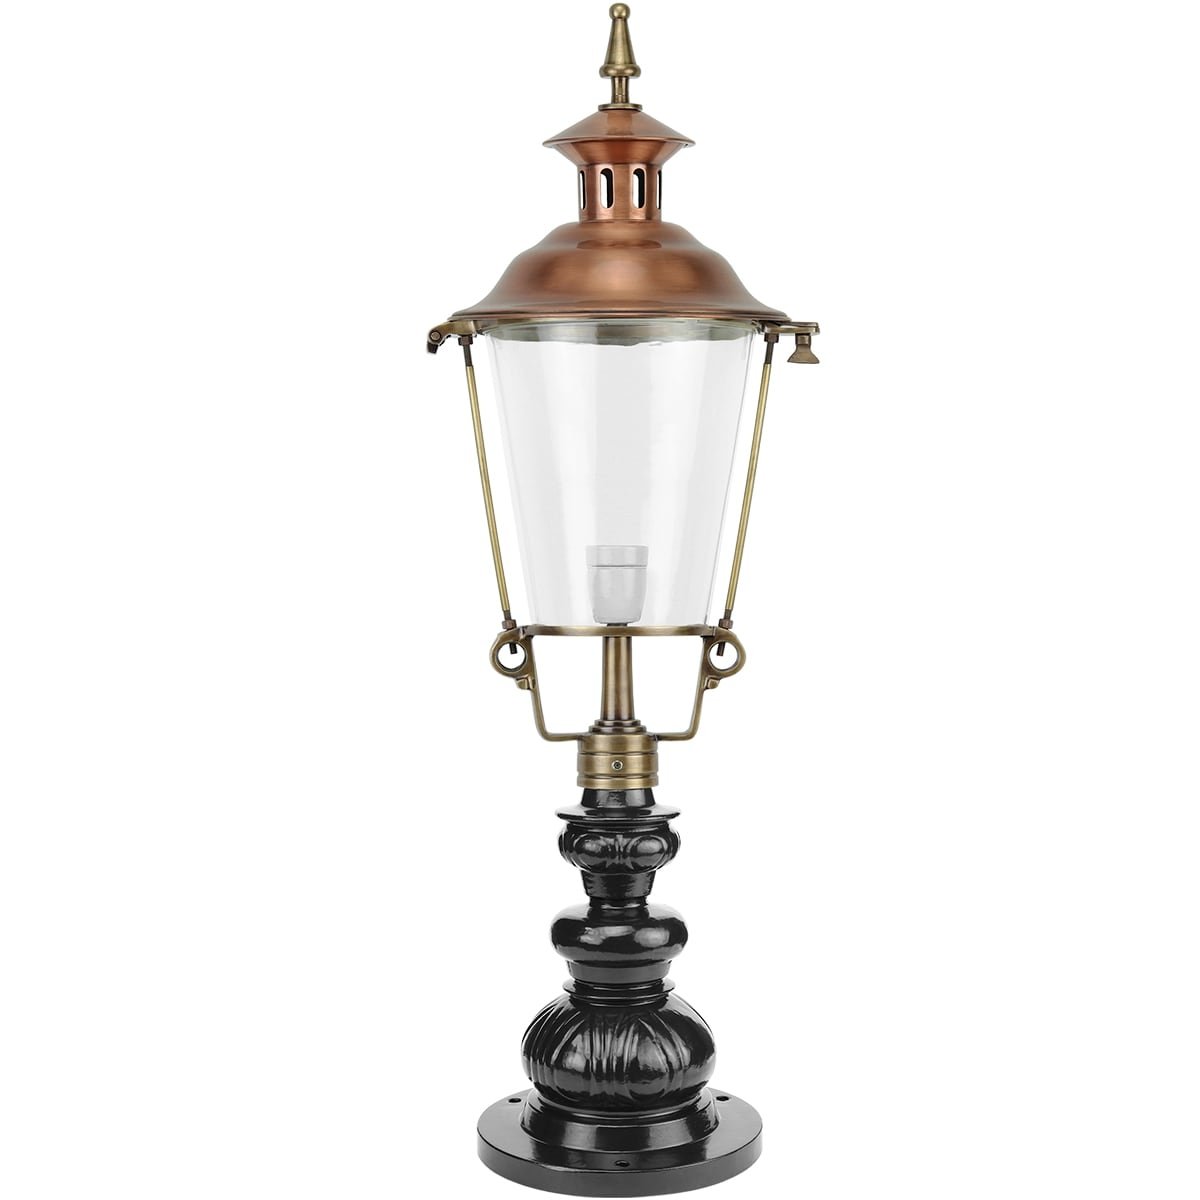 Lanterne extérieure Giethoorn bronze - 91 cm